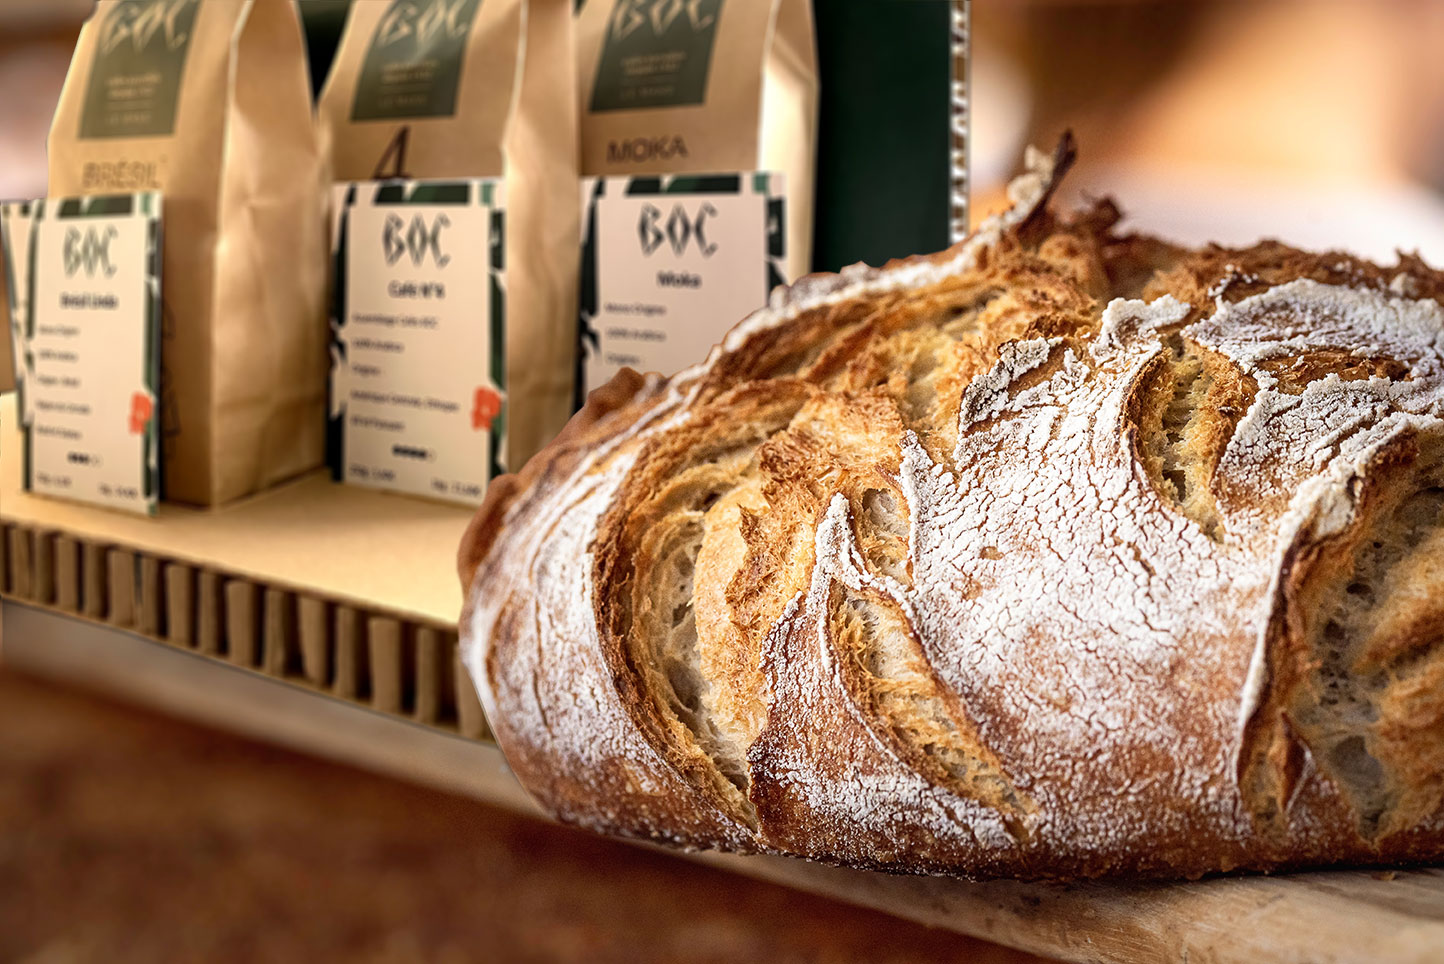 Boc a eu l'idée de vendre son café dans les boulangeries de Sarthe.